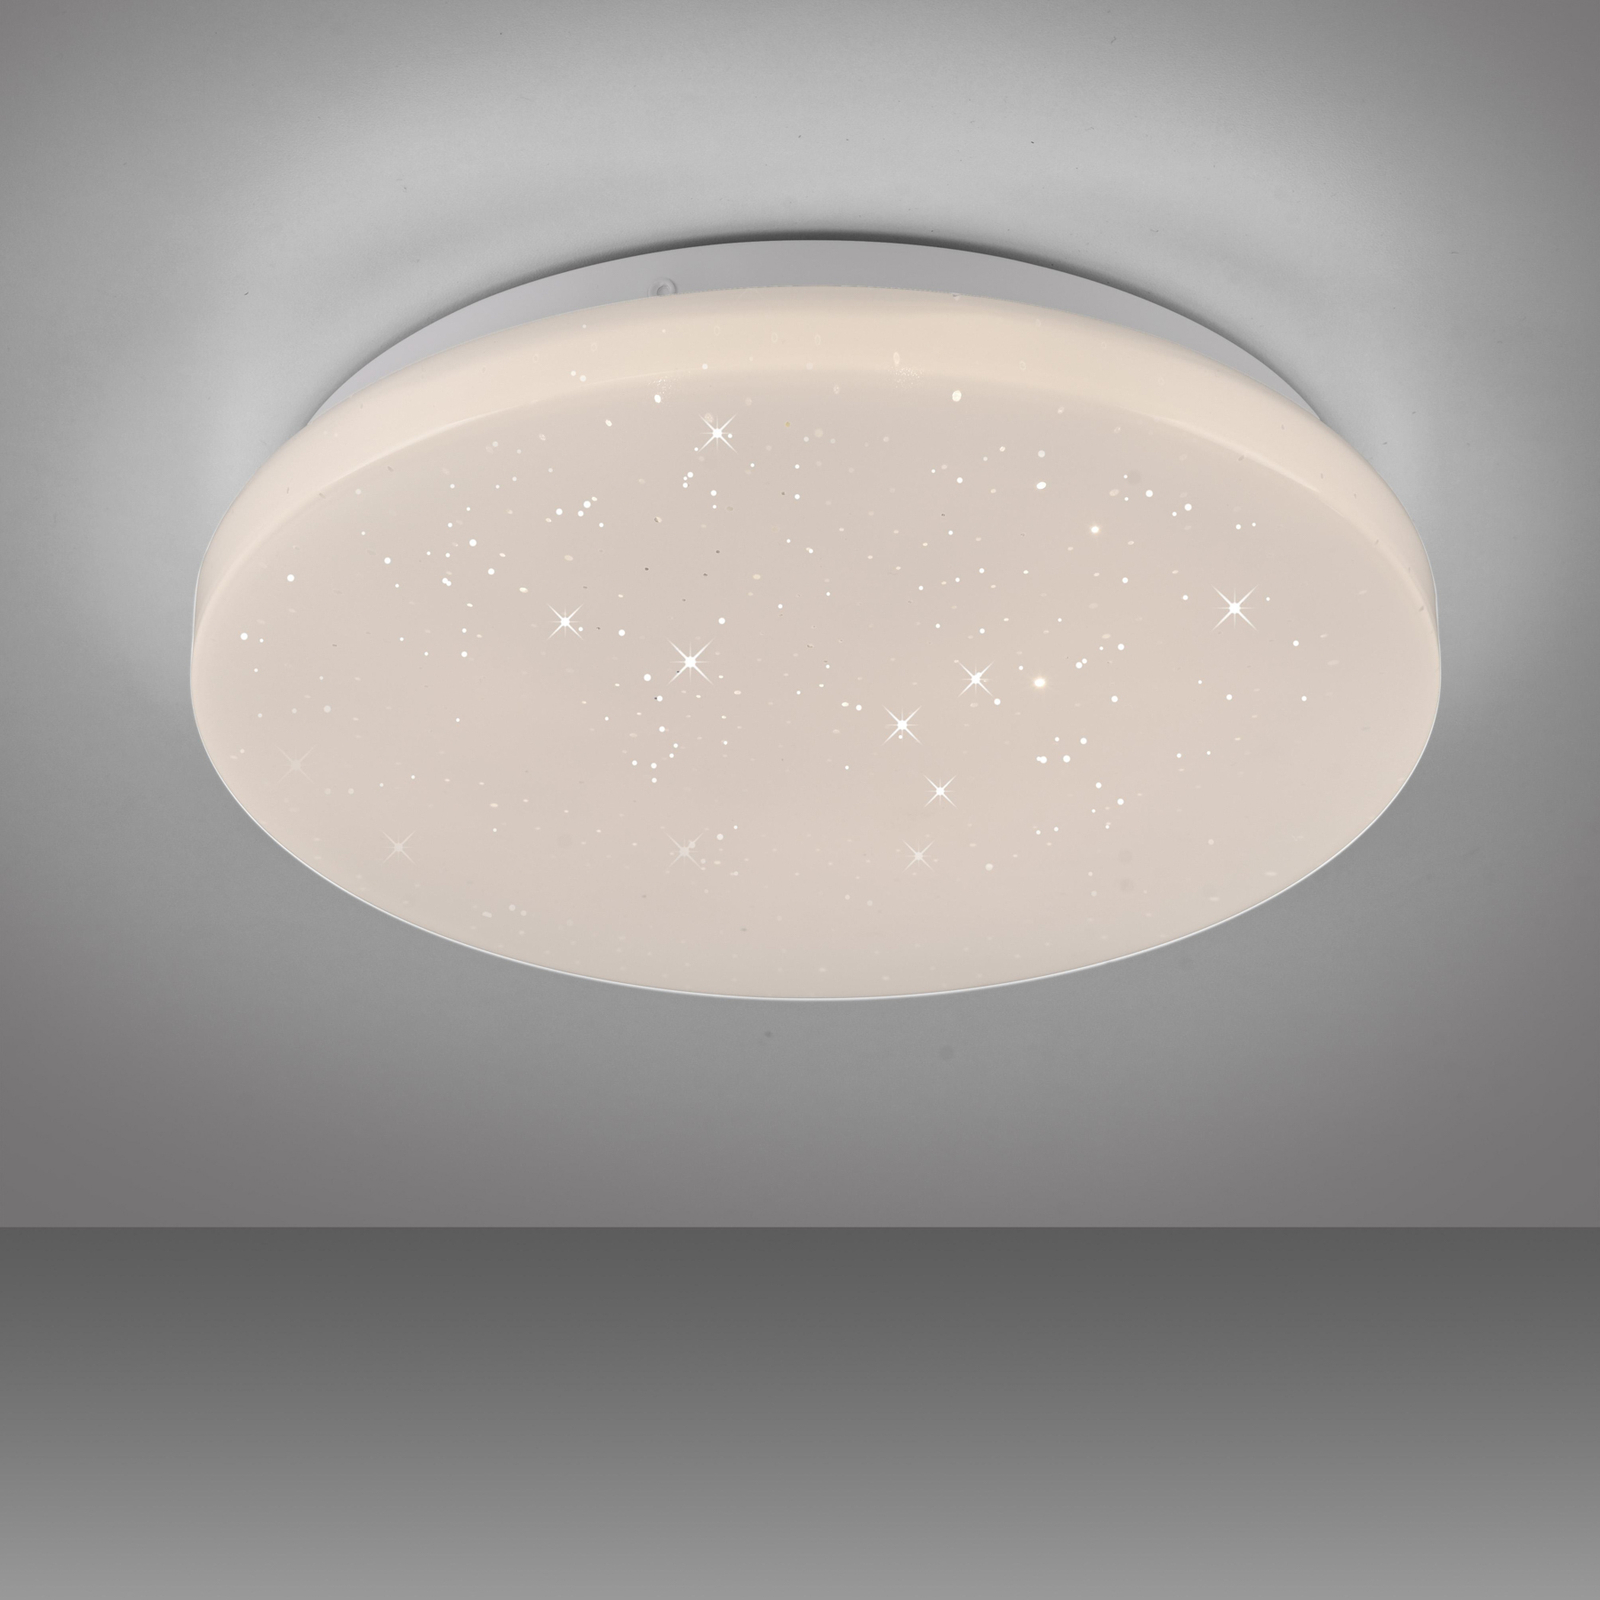 JUST LIGHT. LED ceiling light Uranus, plastic, 3,000 K